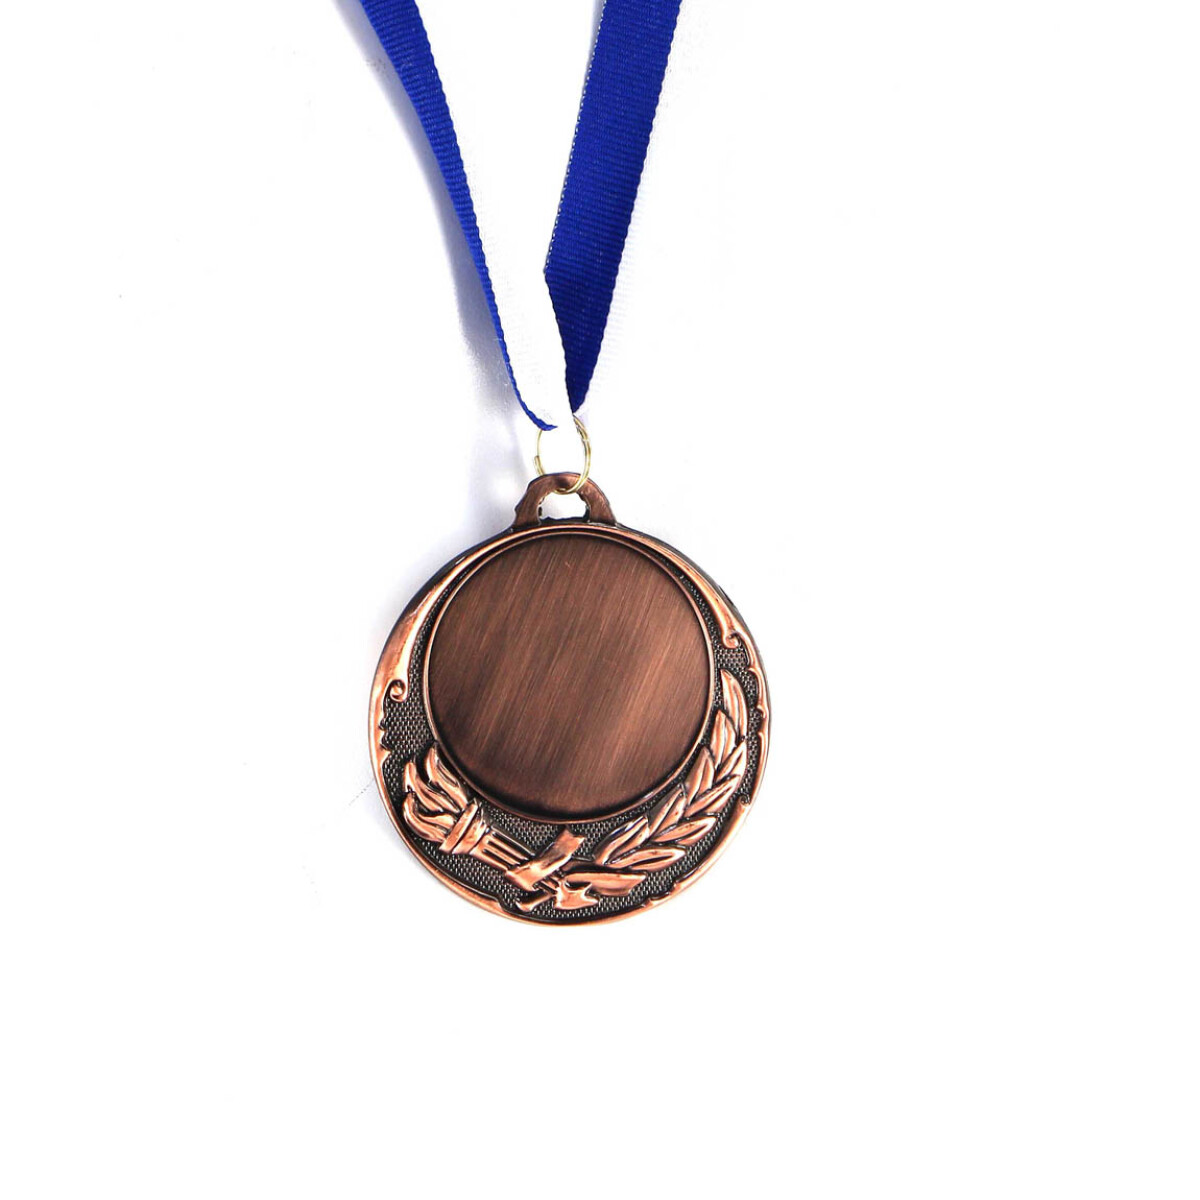 Macri Medalla 6.5 Lisa Laurel Y Antorcha - Bronce 